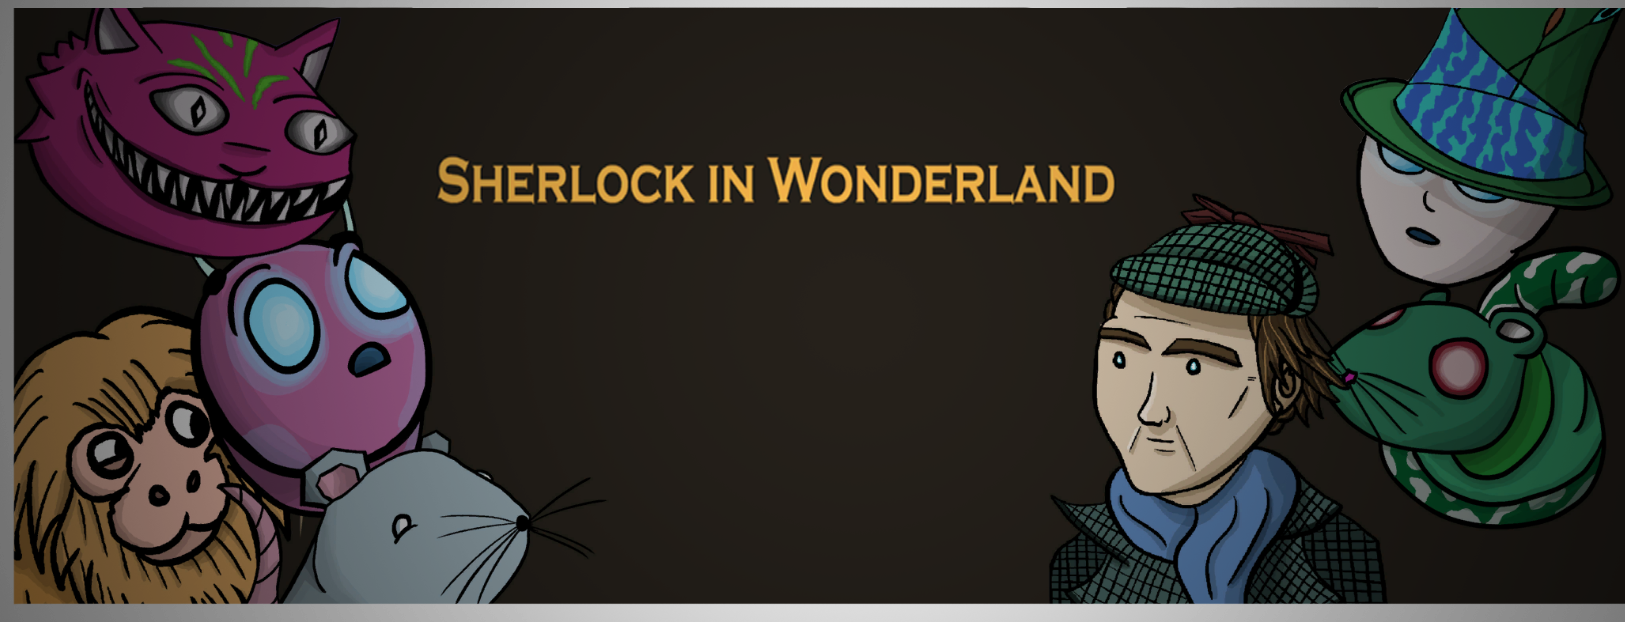 Sherlock in Wonderland